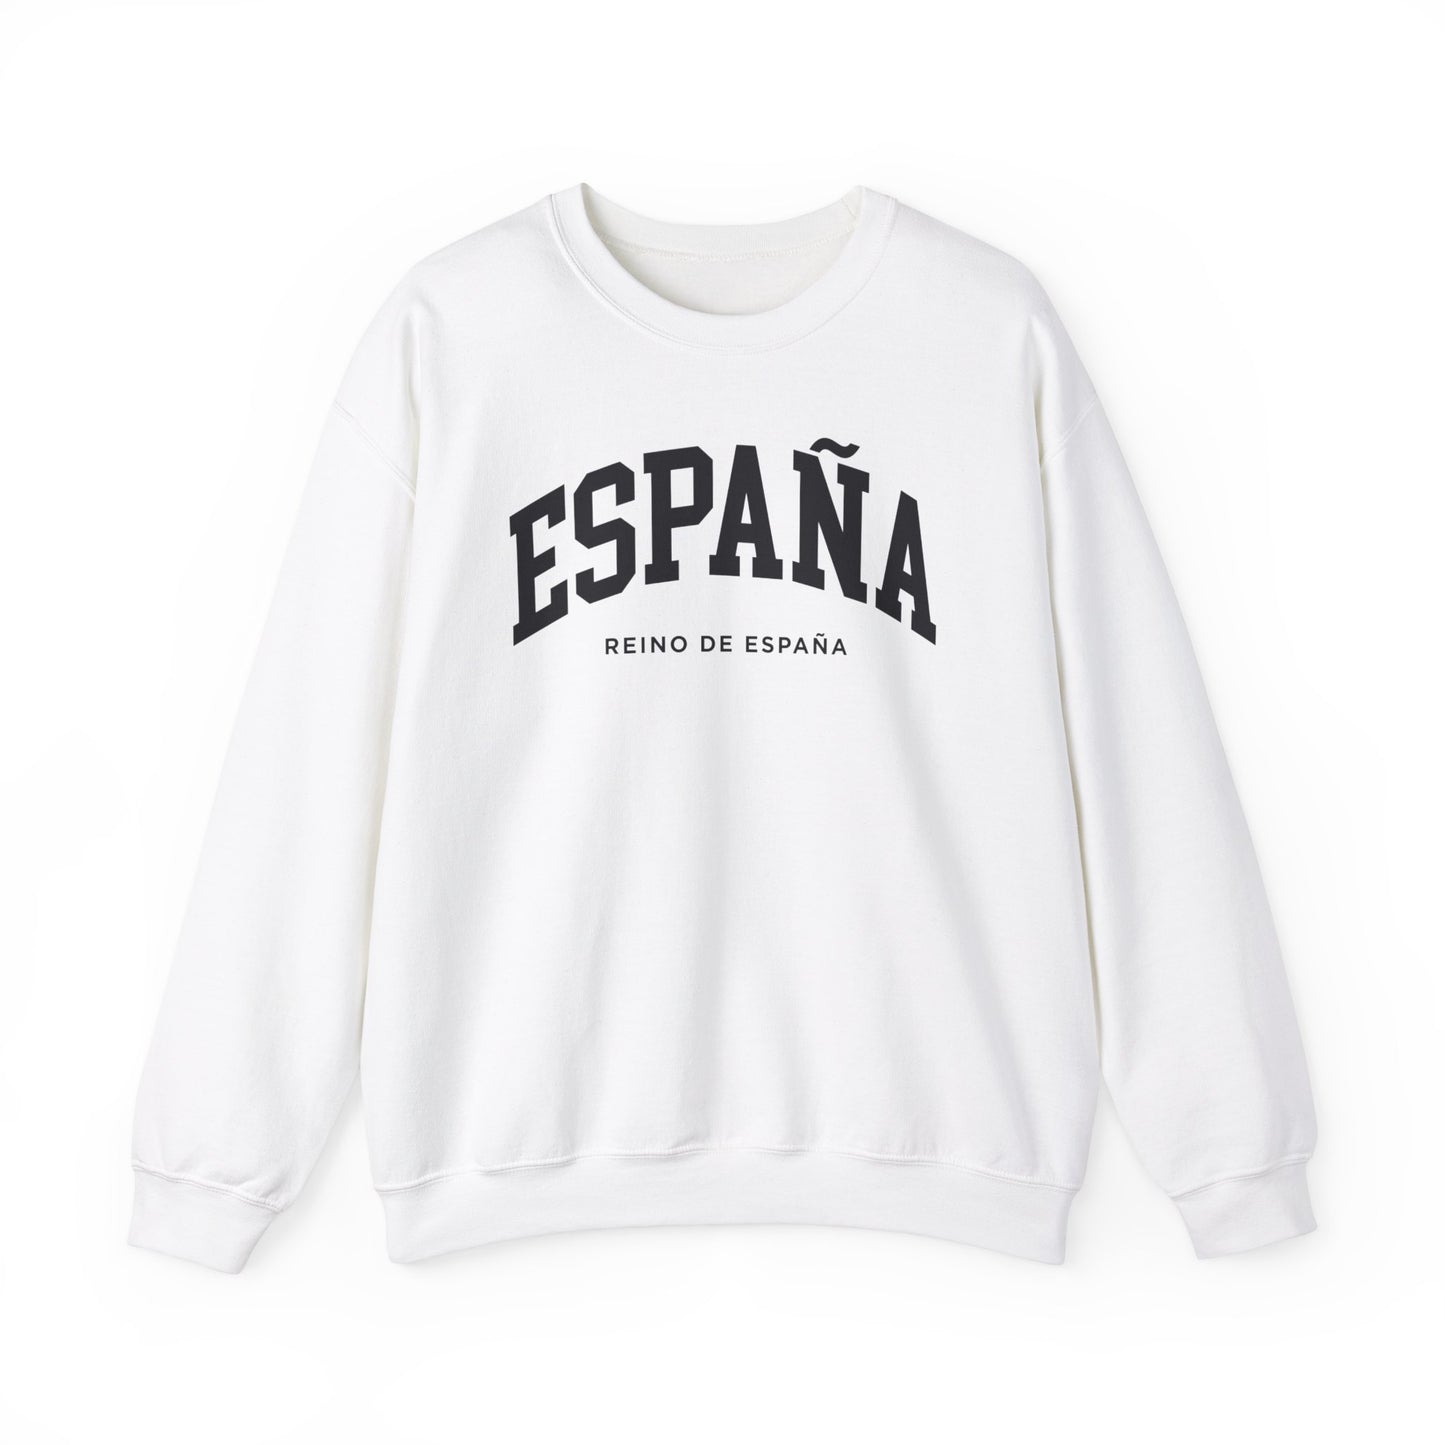 Spain Sweatshirt